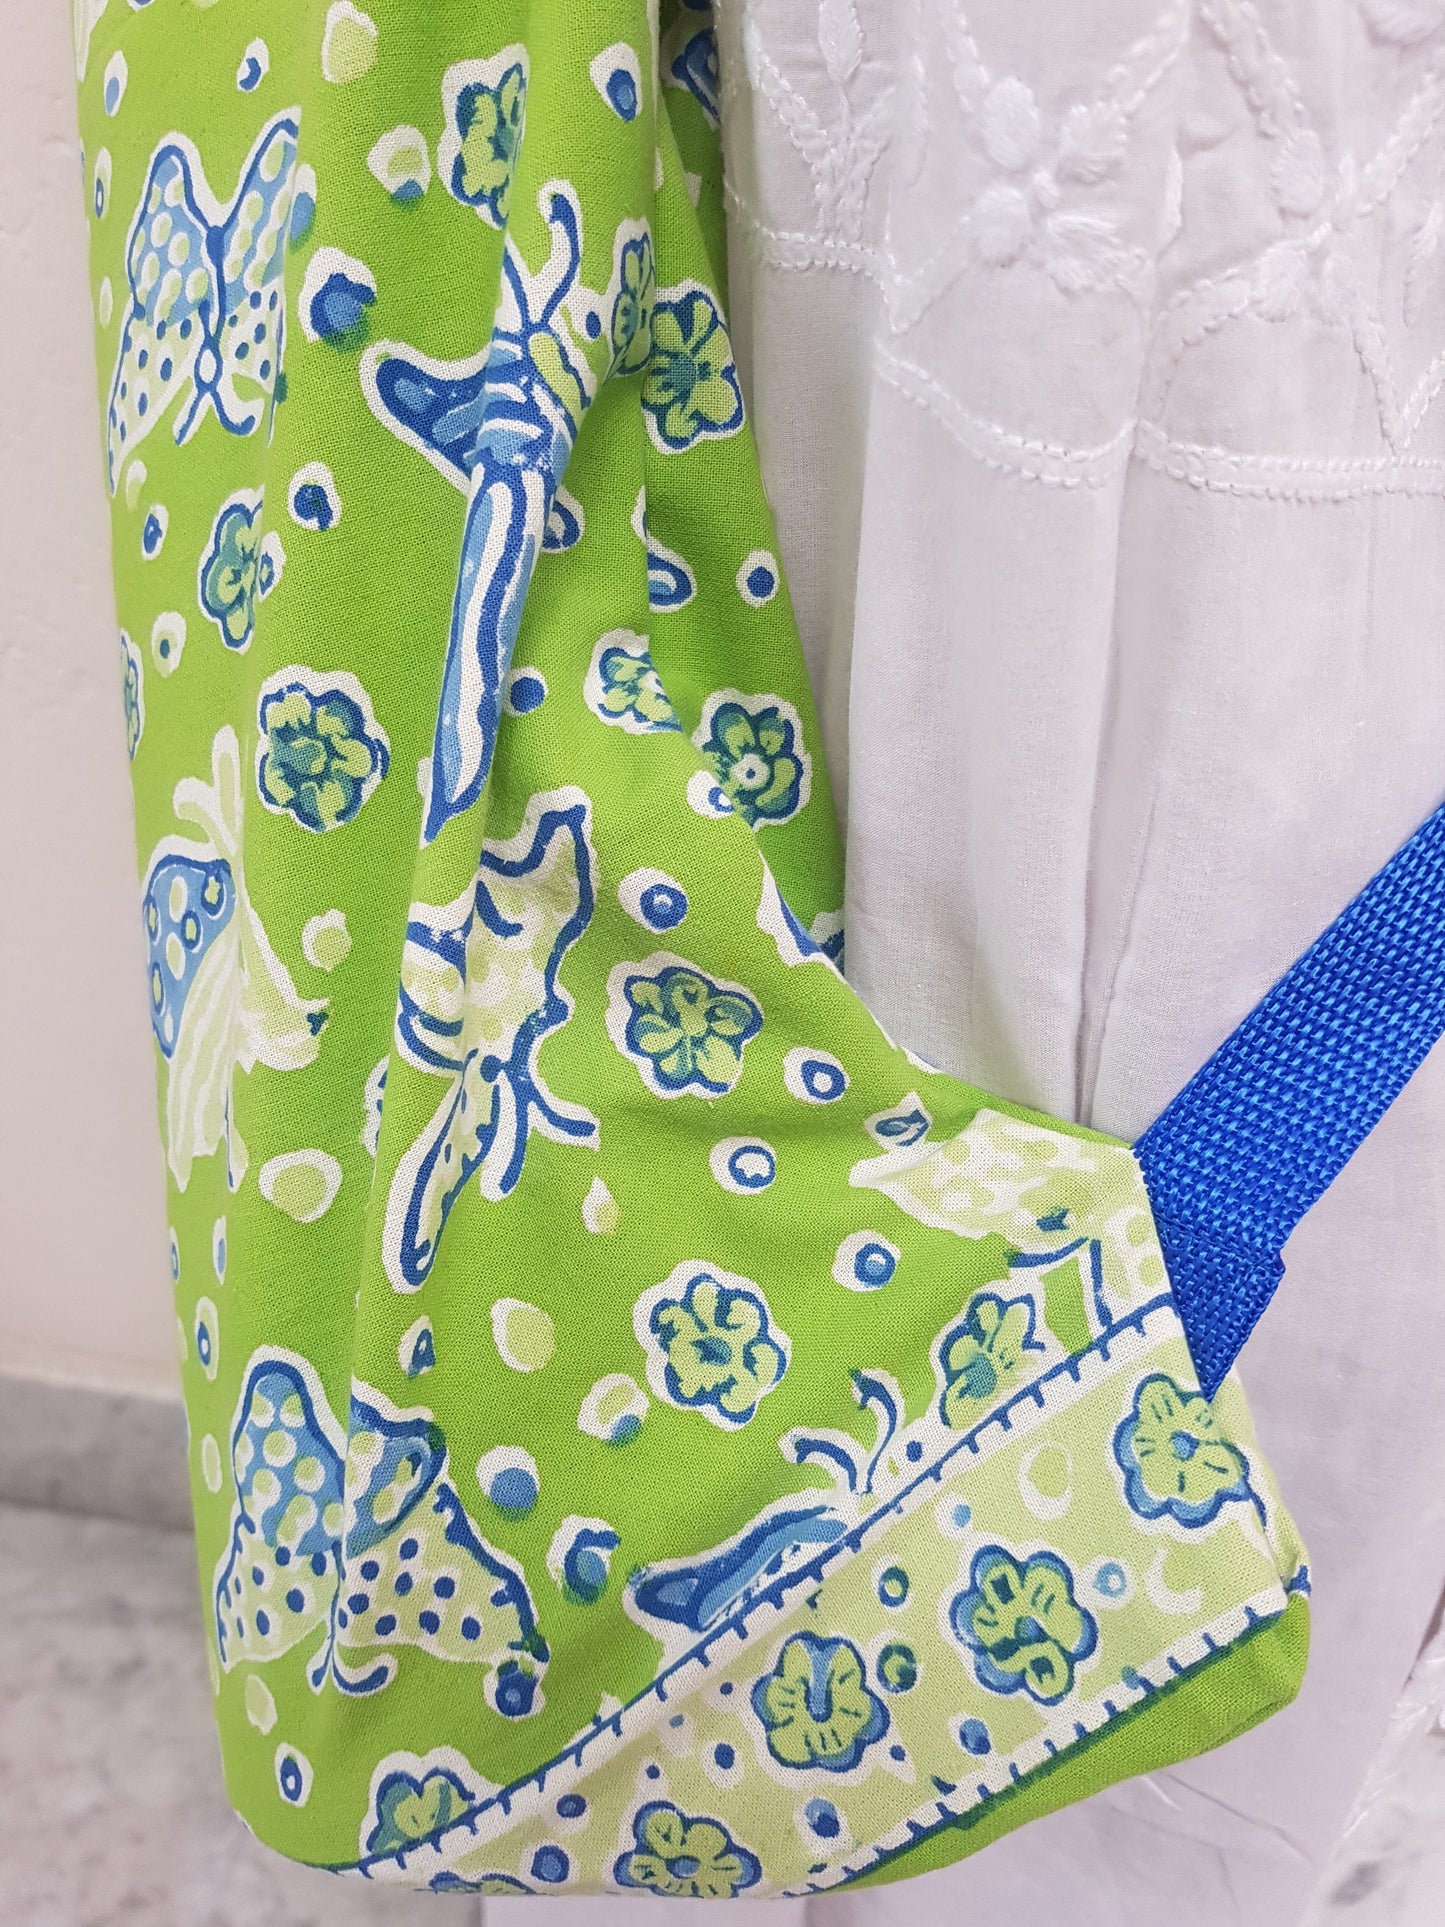 Detalle de correa azul en funda para tapete de yoga 100% algodón, estampada a mano verde con mariposas azules. Hecha en la India.